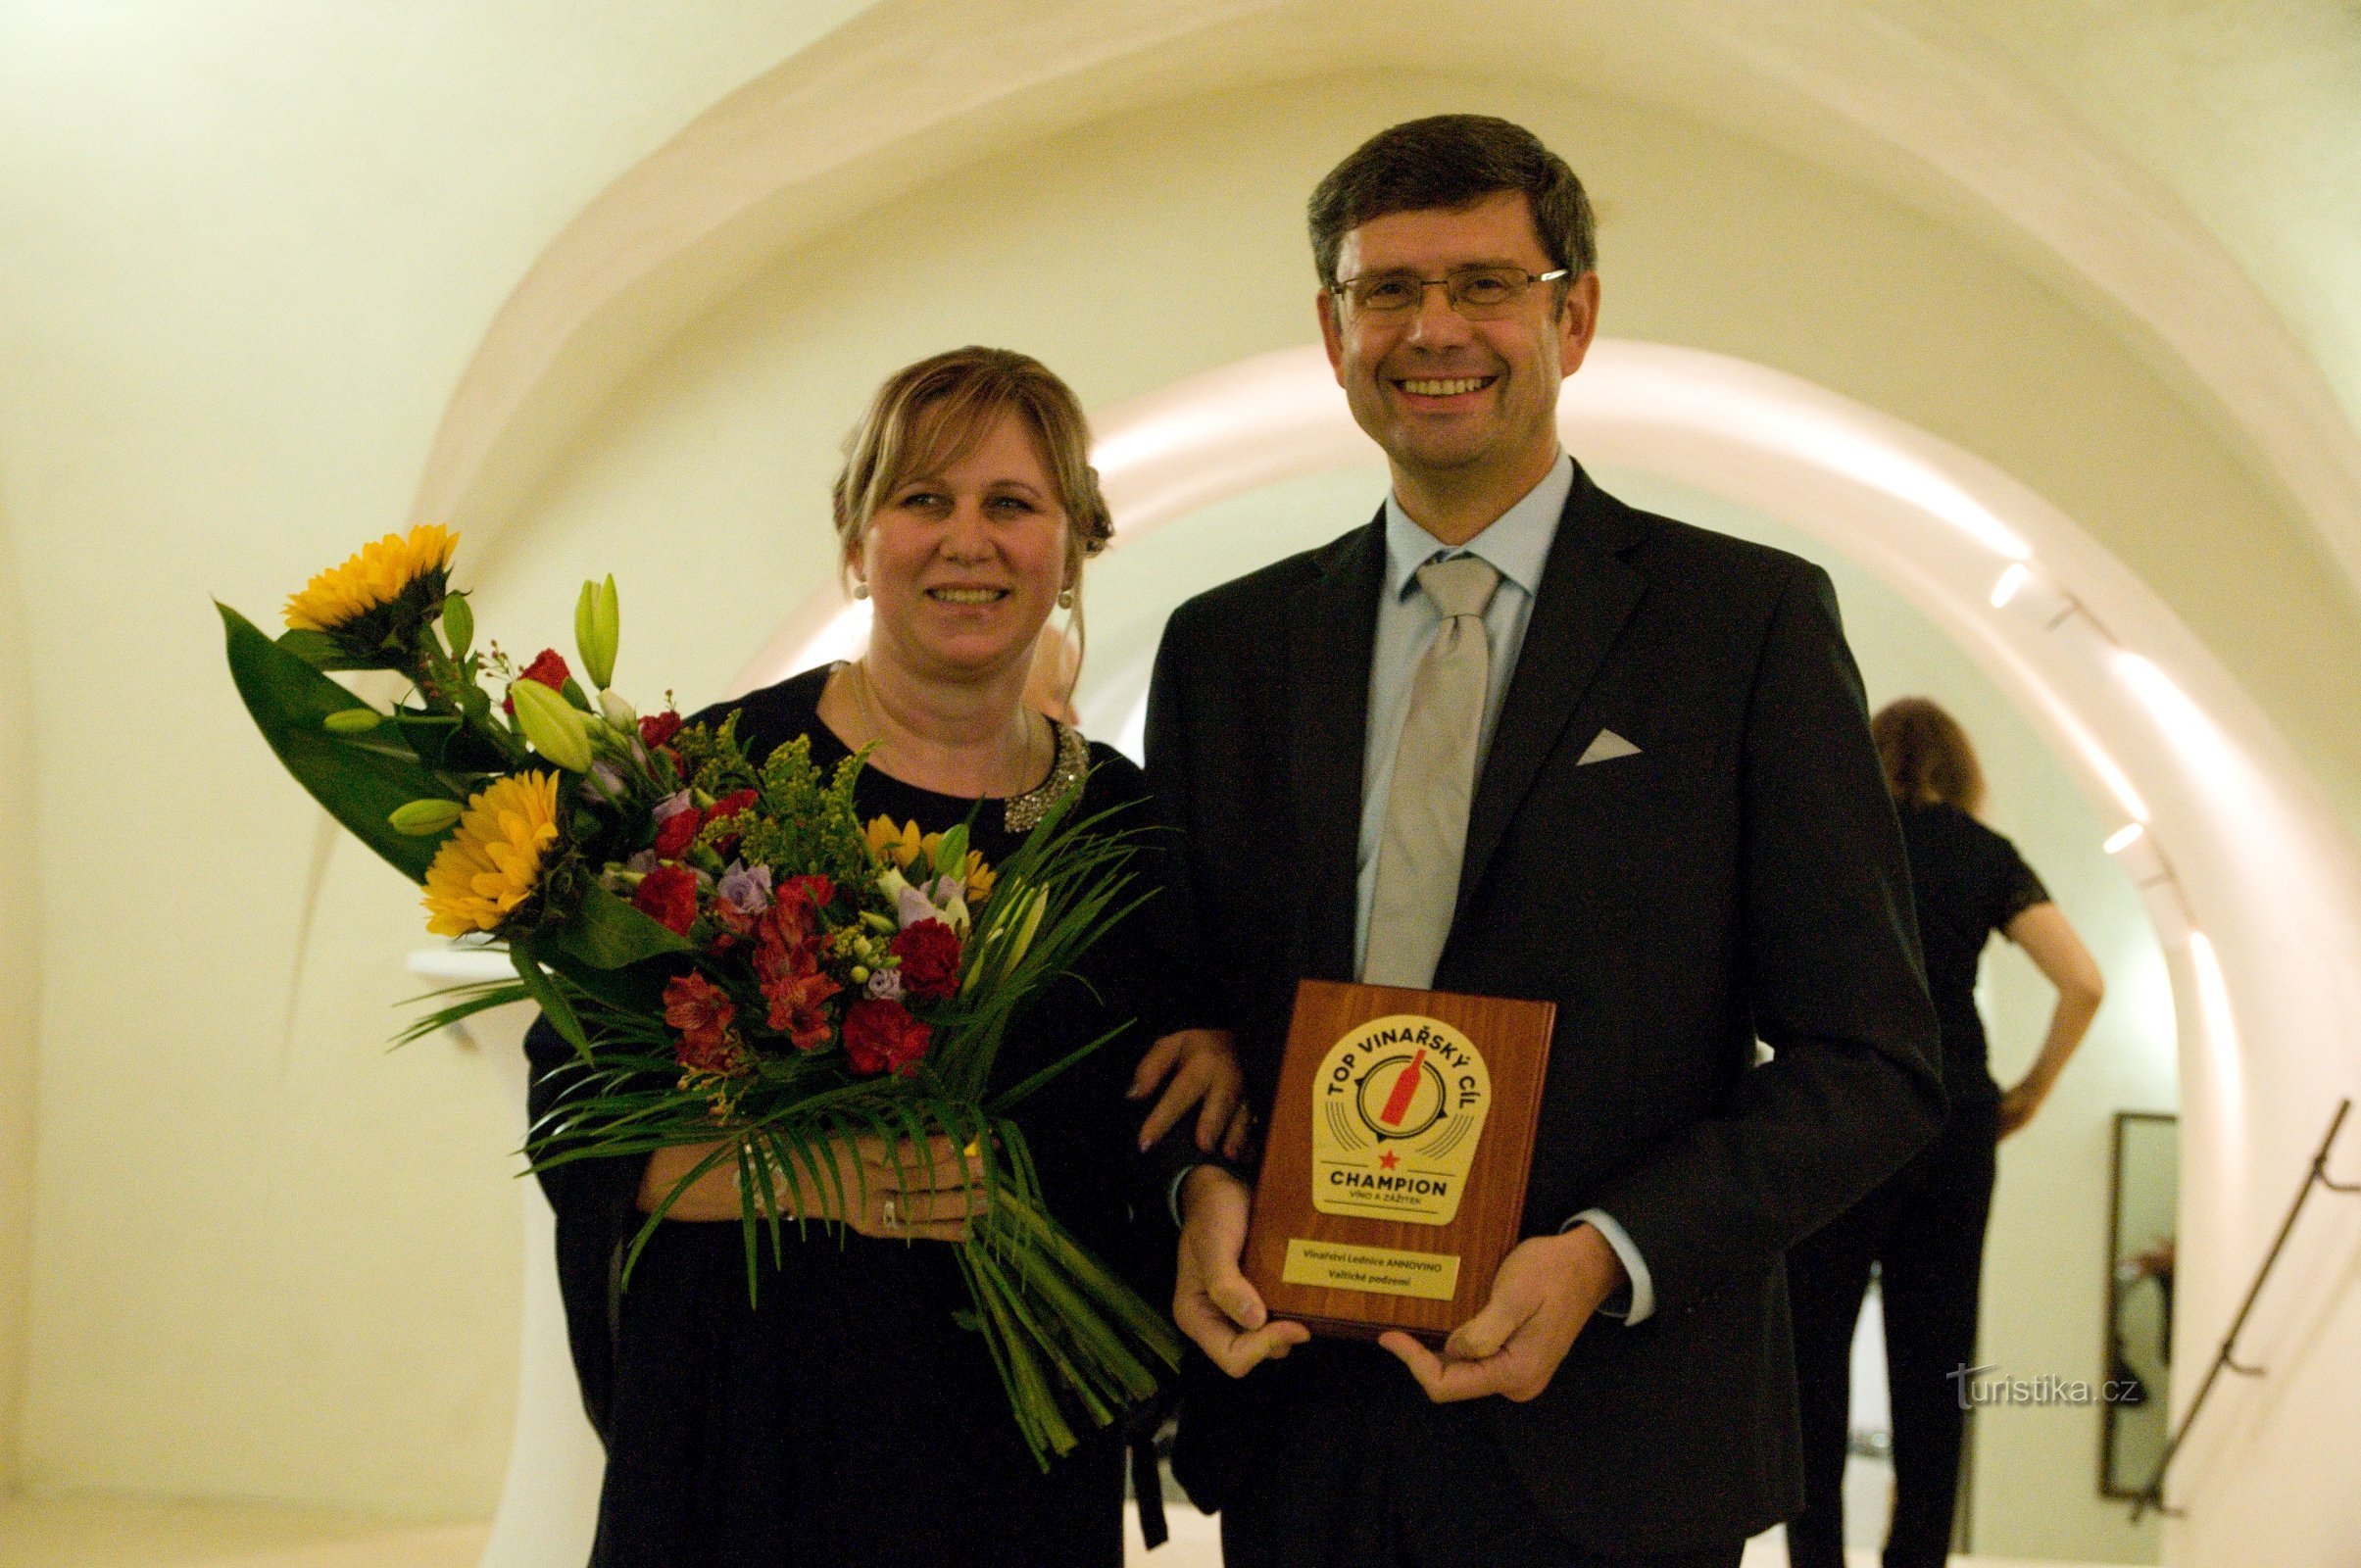 R: Žďárský trägt stolz eine wertvolle Trophäe – die Plakette Top wine destination CHAMPION.